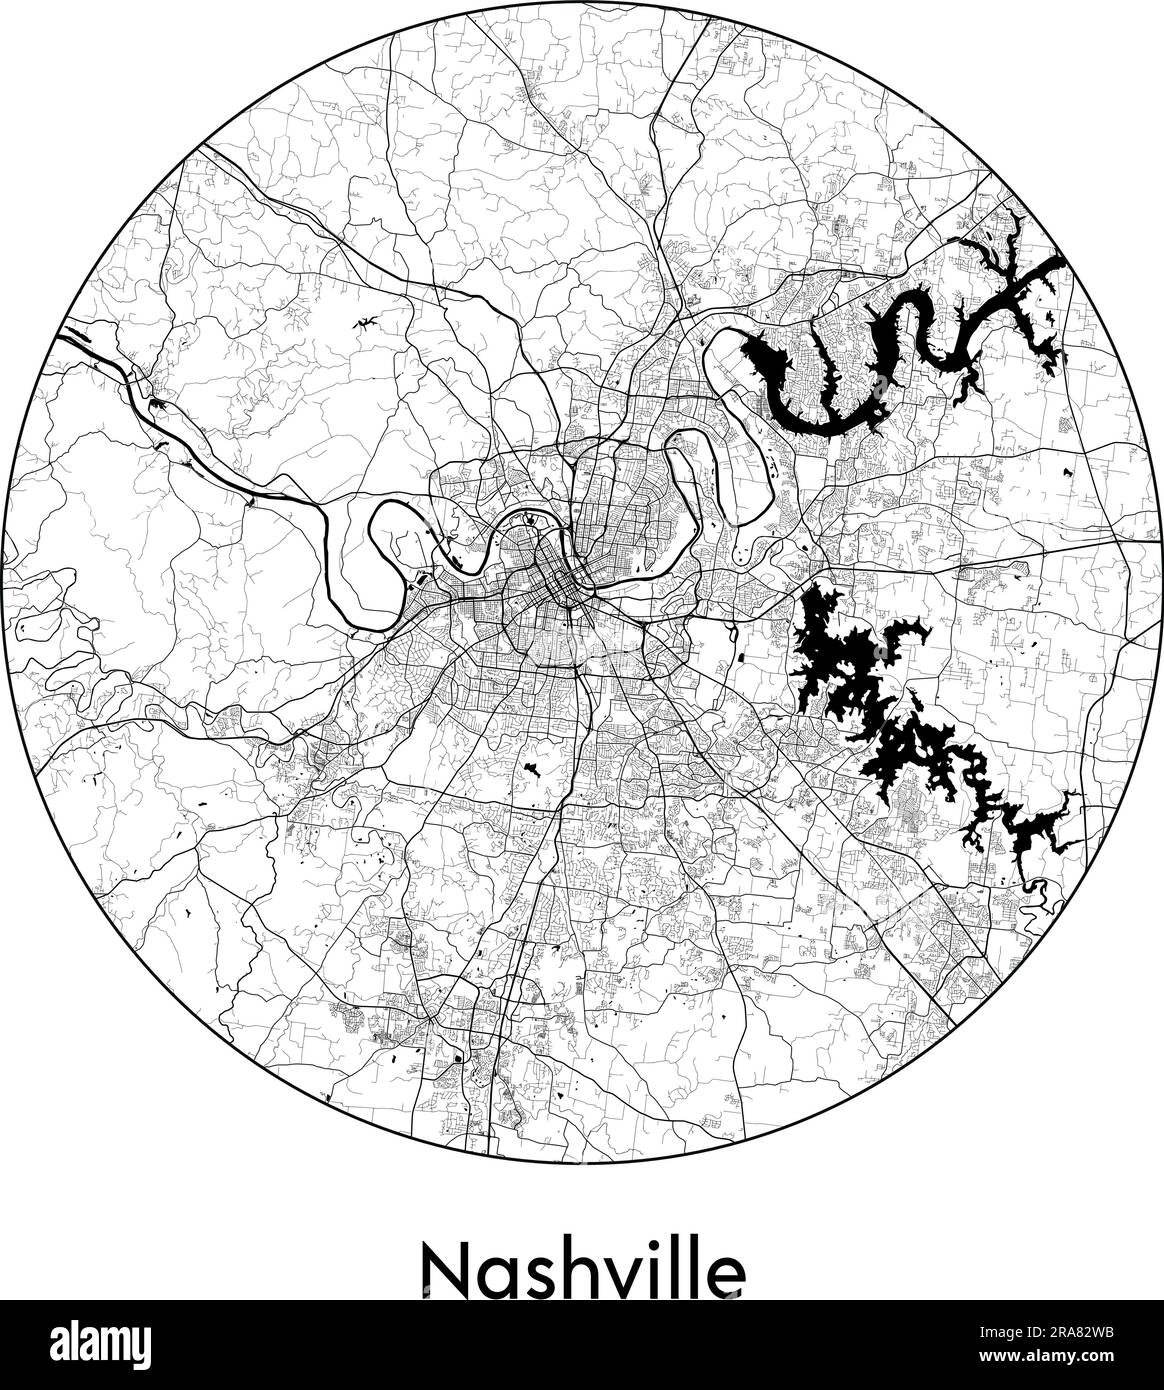 Stadtplan Nashville USA Nordamerika Vektordarstellung schwarz weiß Stock Vektor